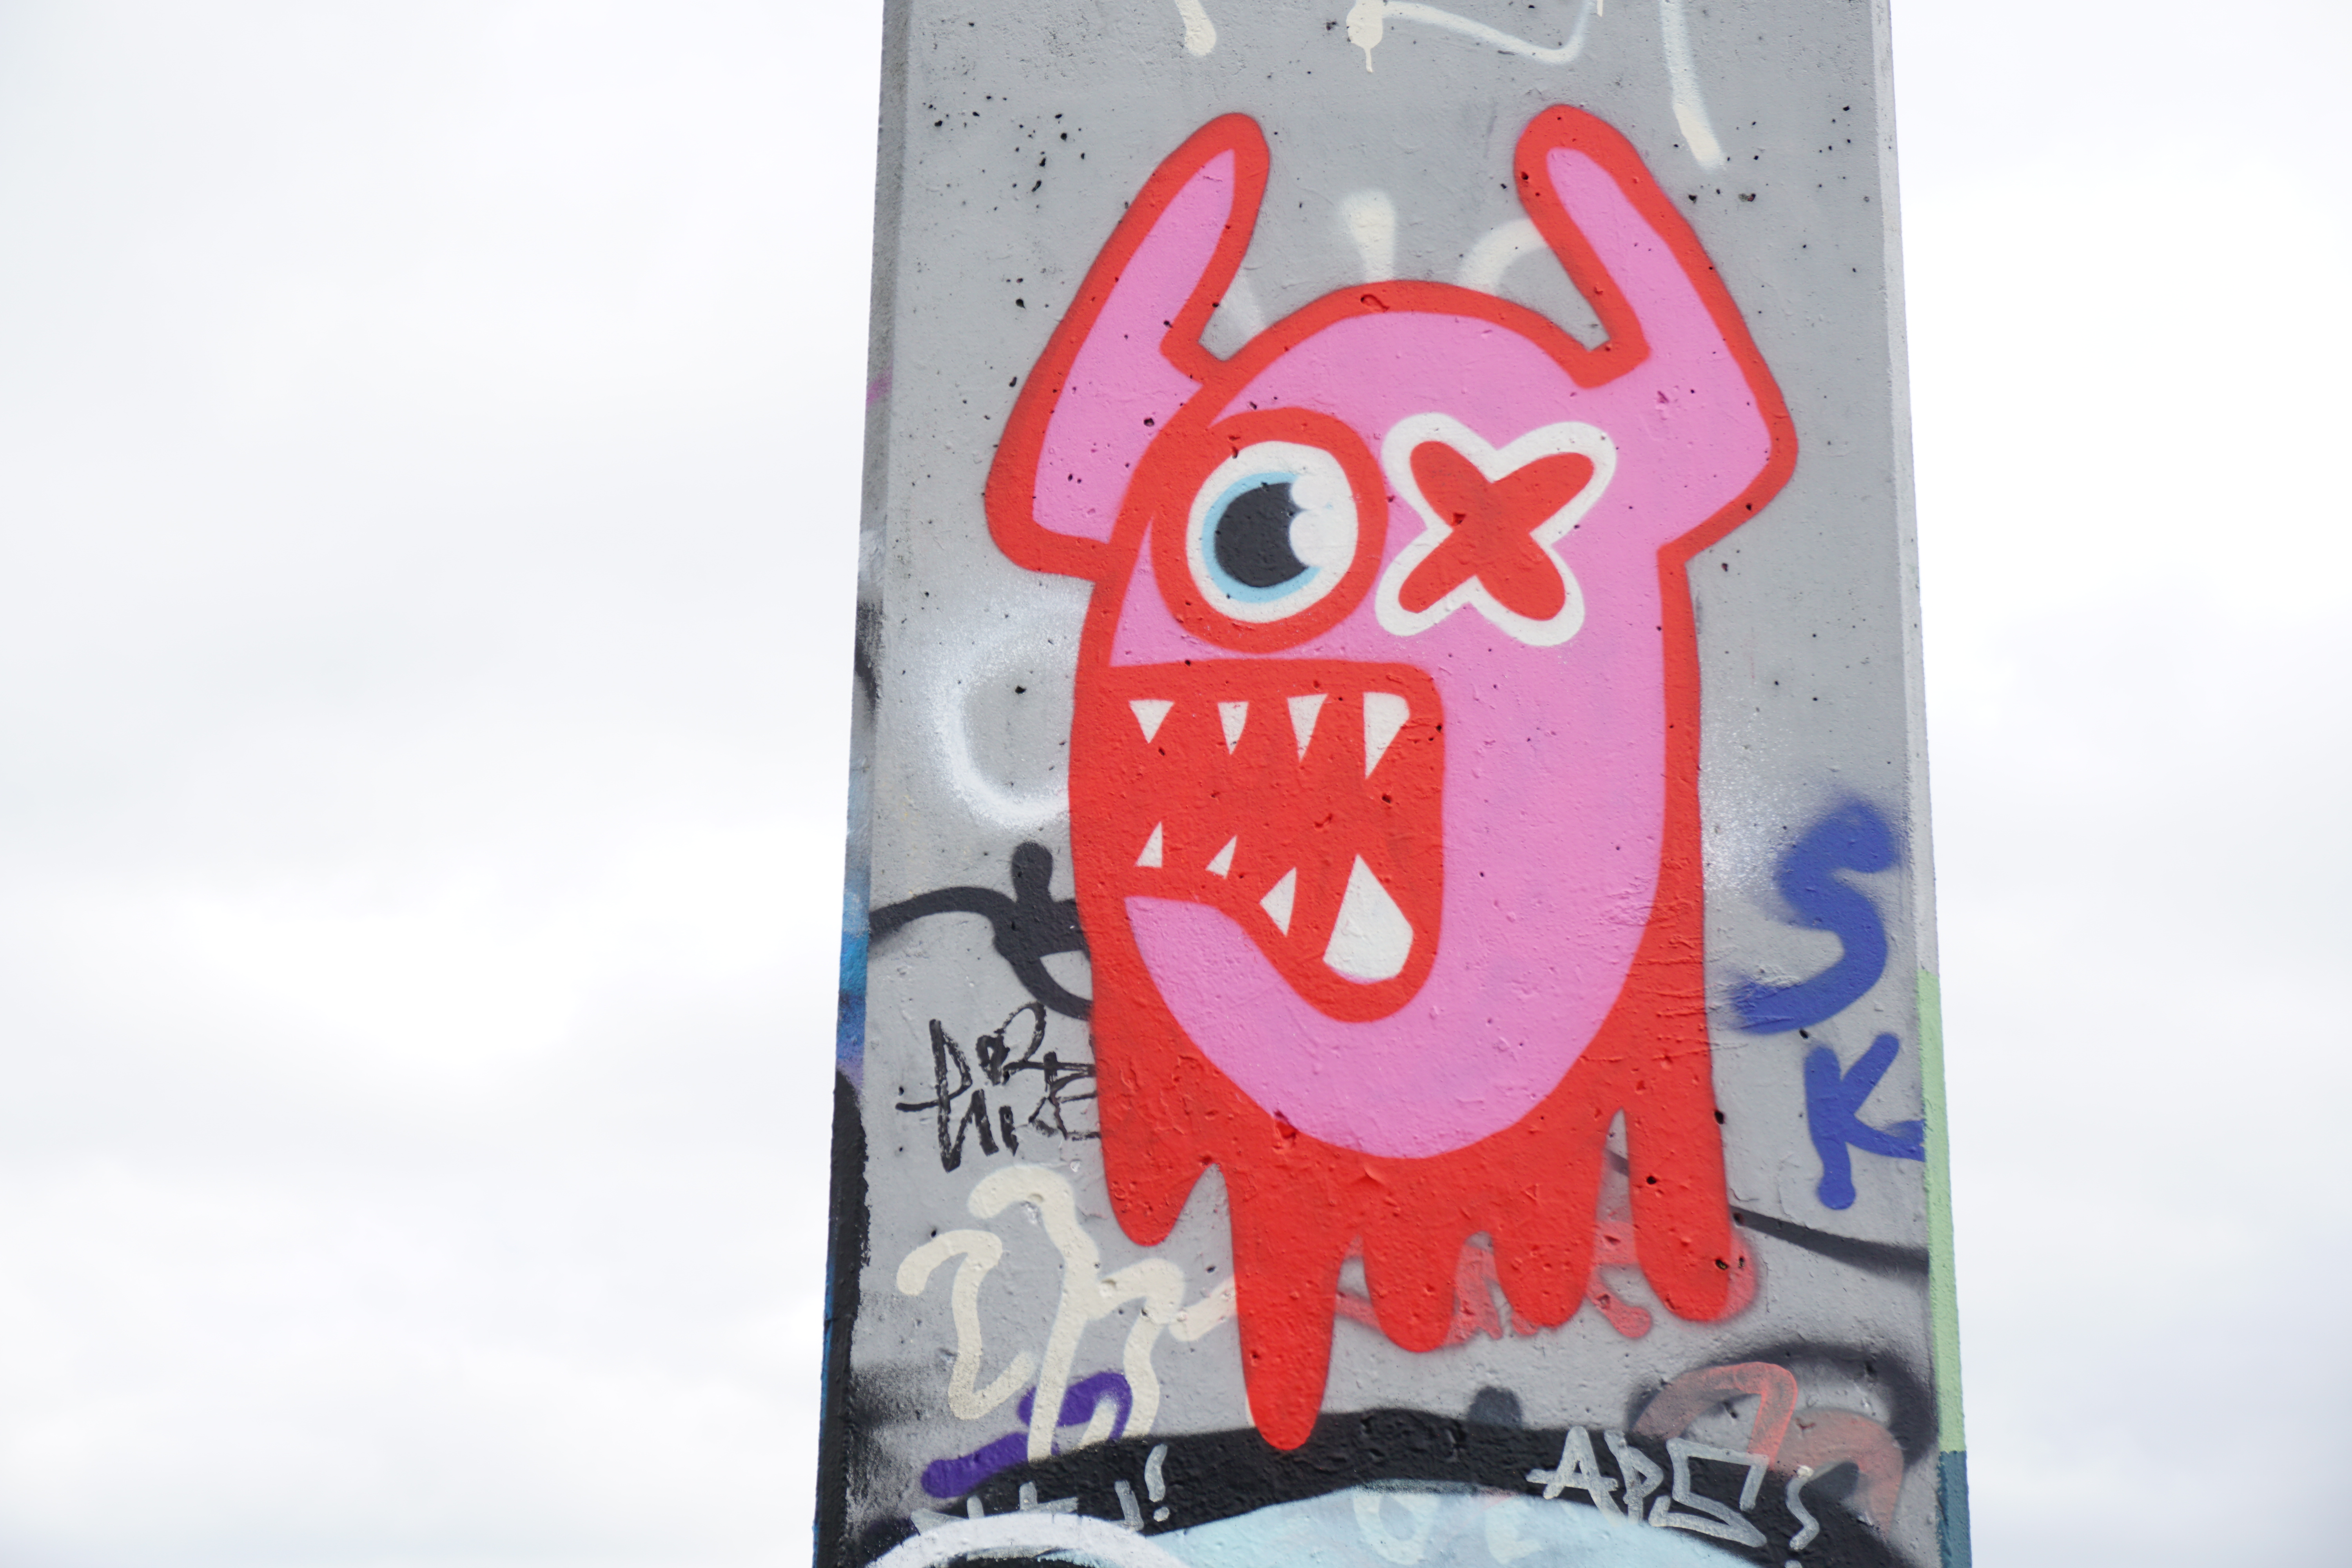 Ox Alien&mdash;Ox Alien invaded Arnhem